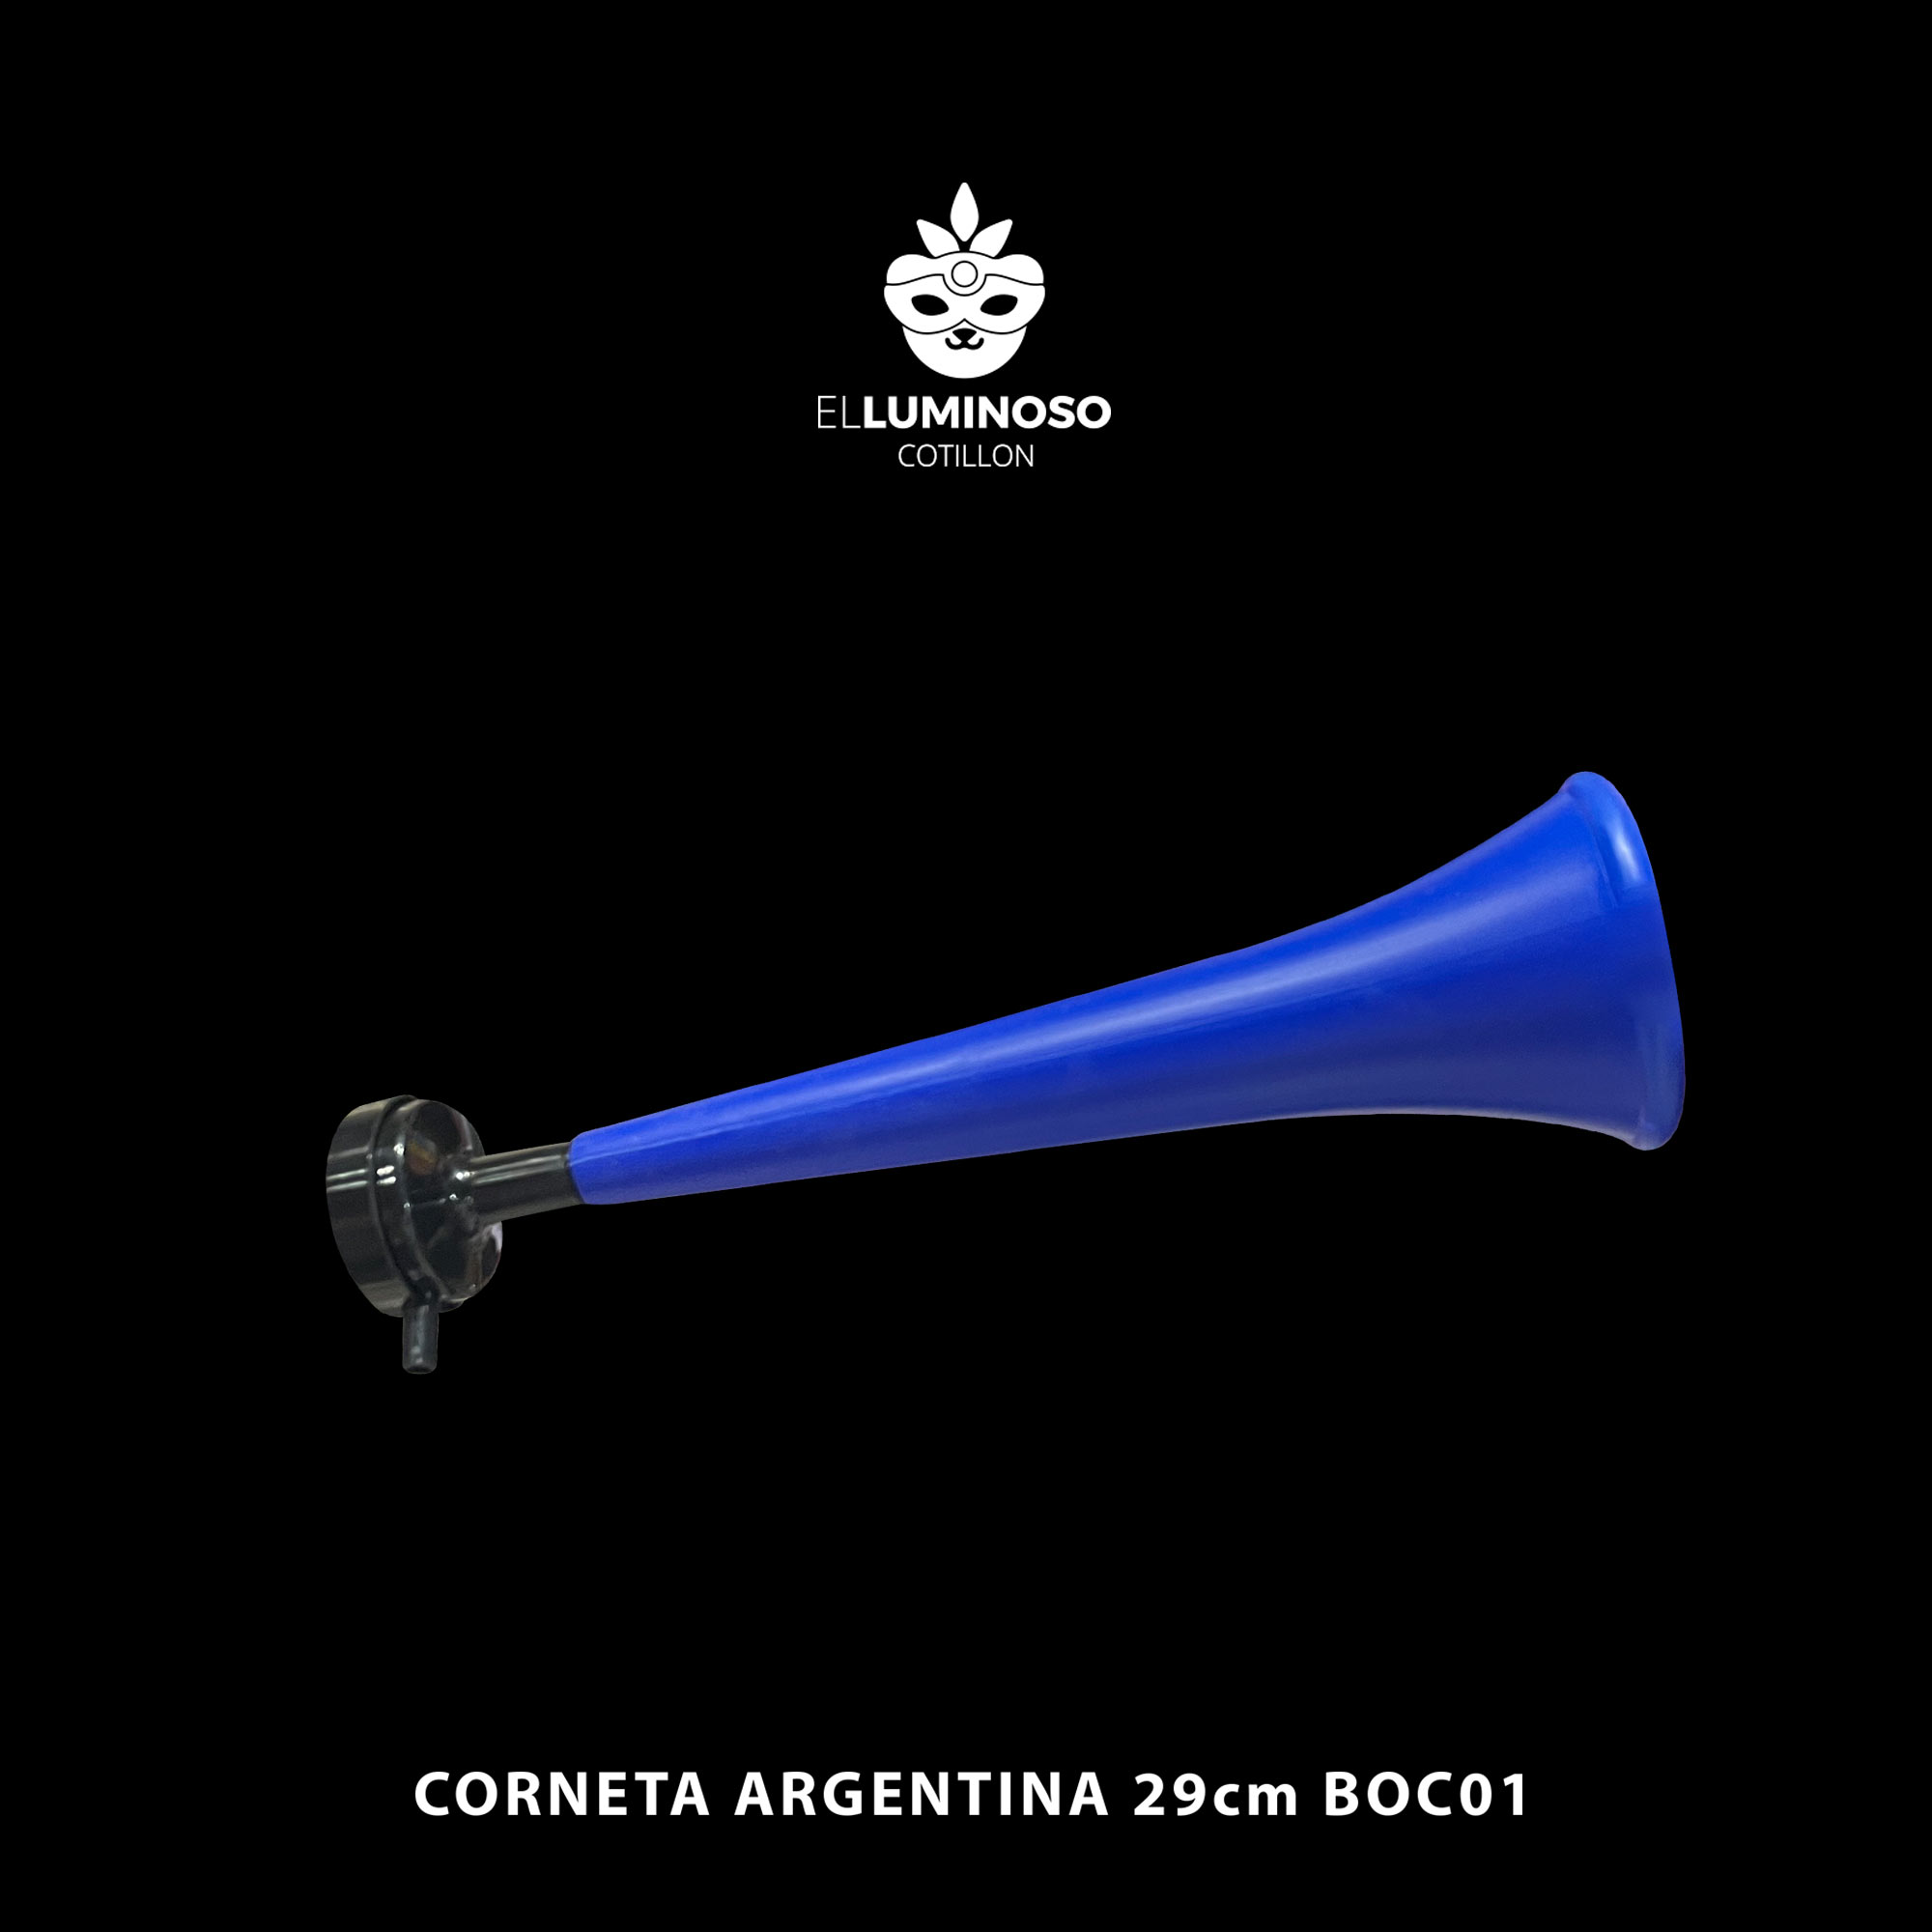 CORNETA ARGENTINA 29CM